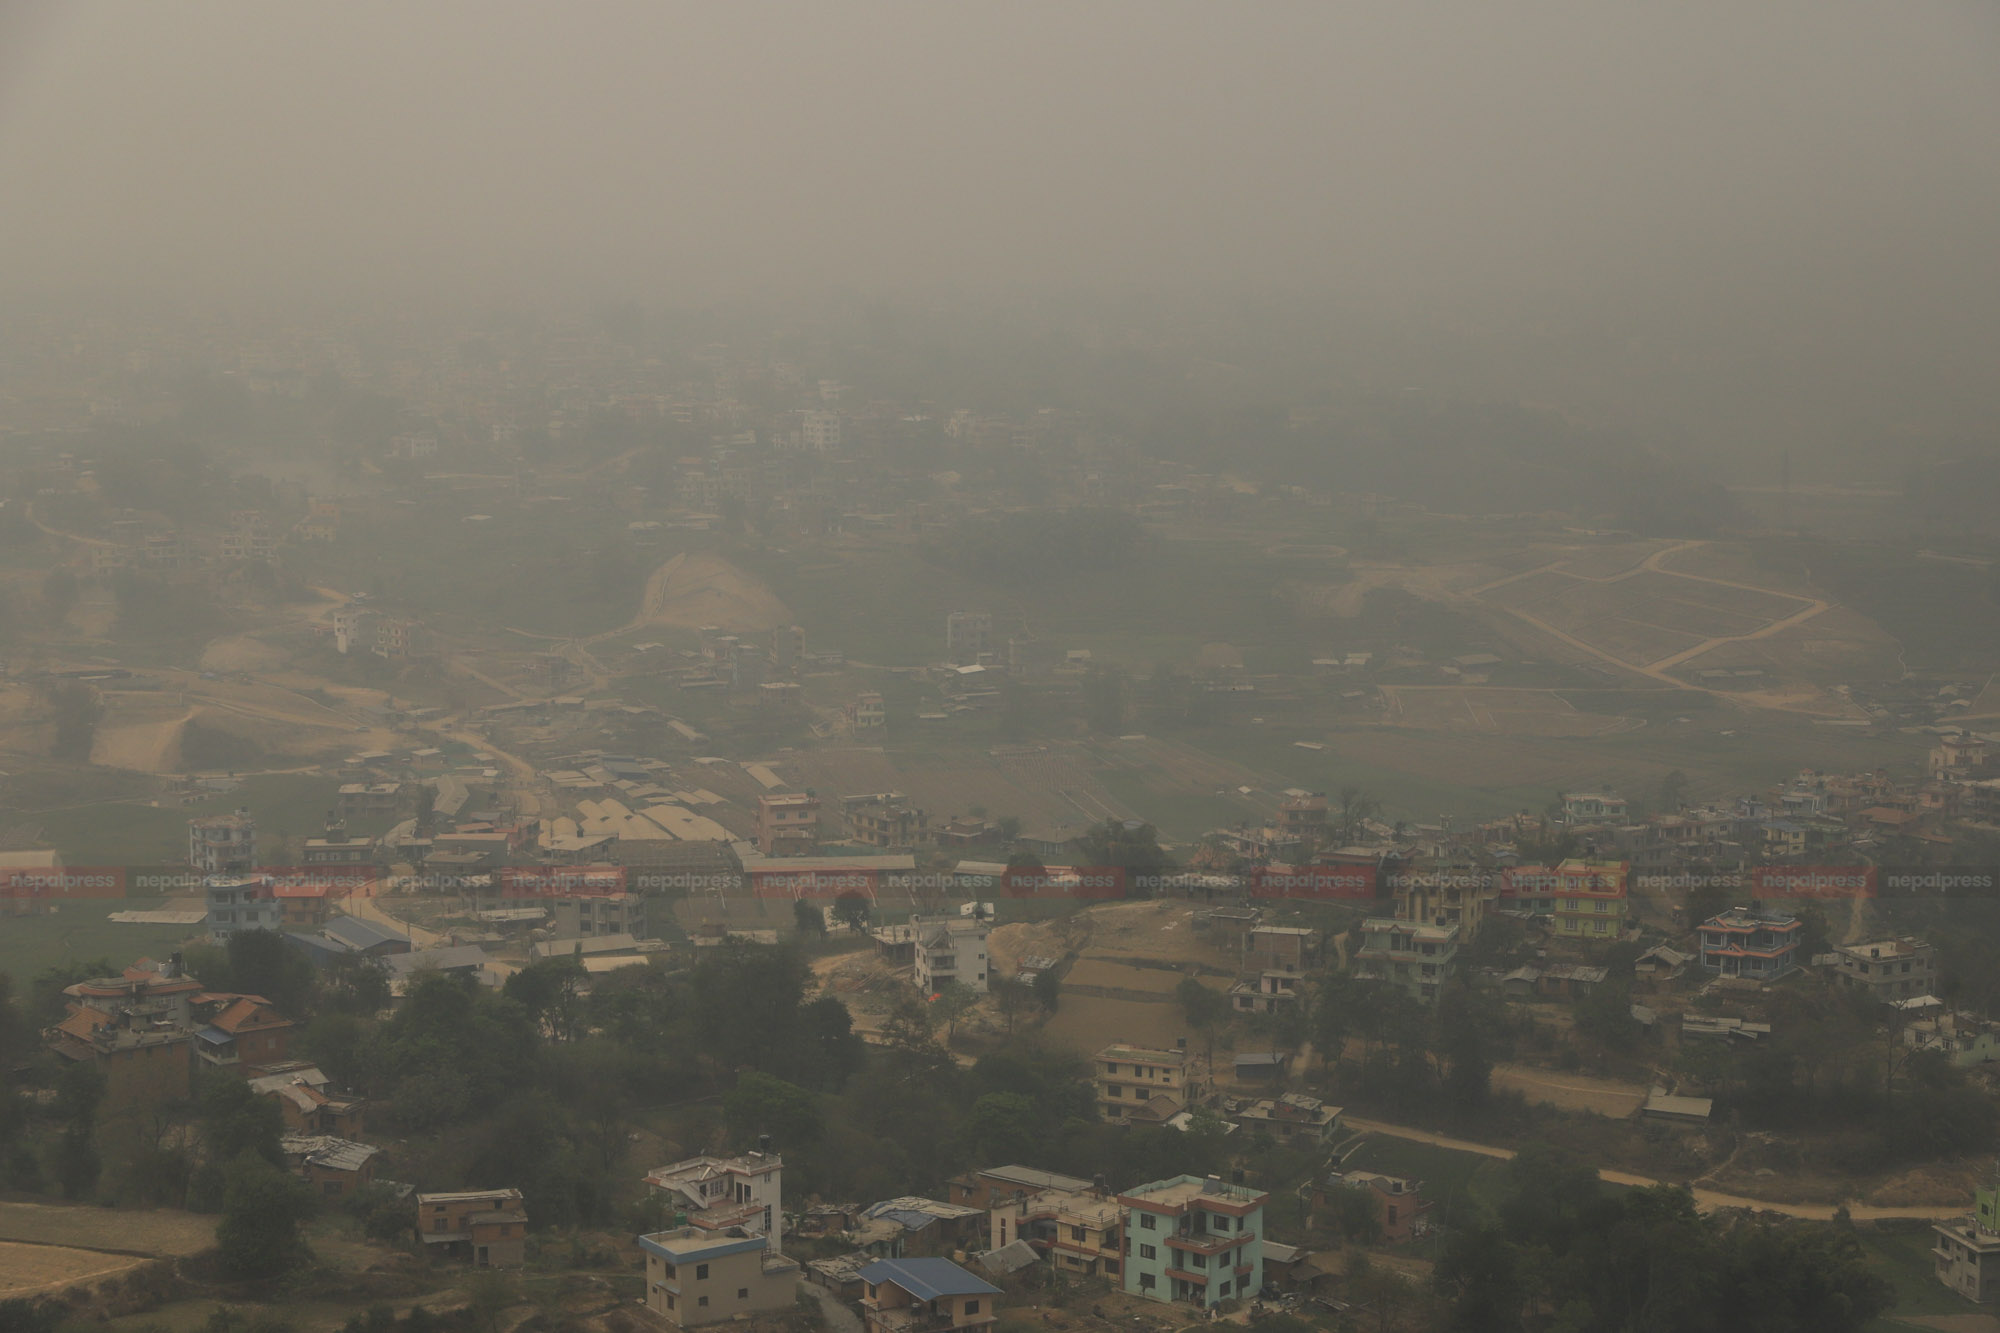 नेपालमा वायु प्रदूषण बढ्दै गएको भन्दै सचेत रहन विज्ञको सुझाव